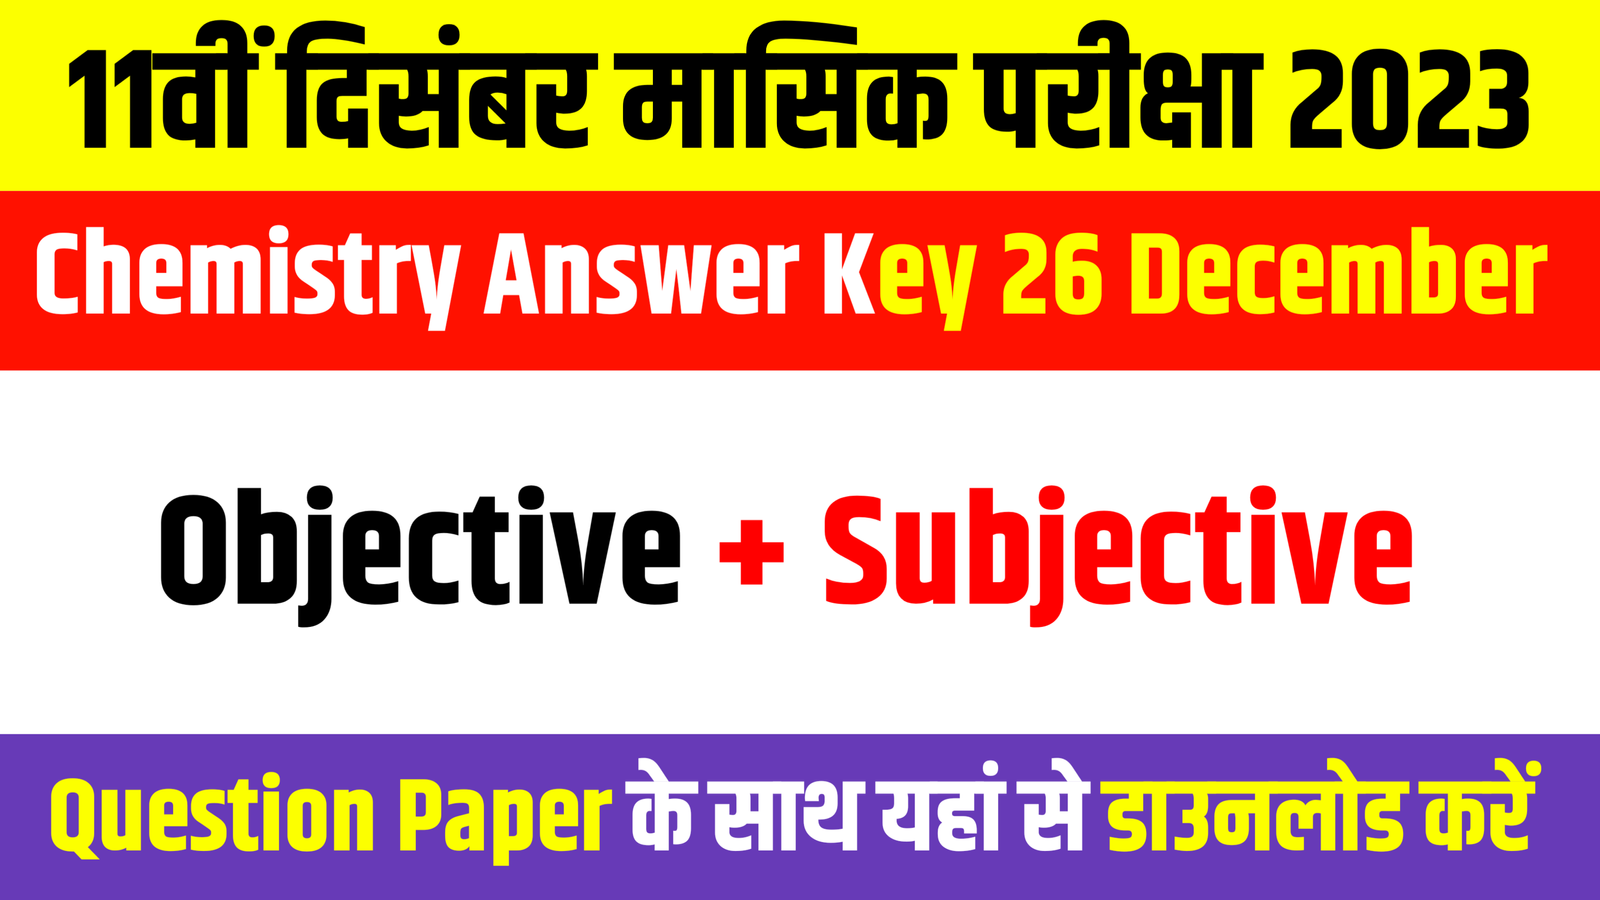 Bihar Board 11th Chemistry answer key